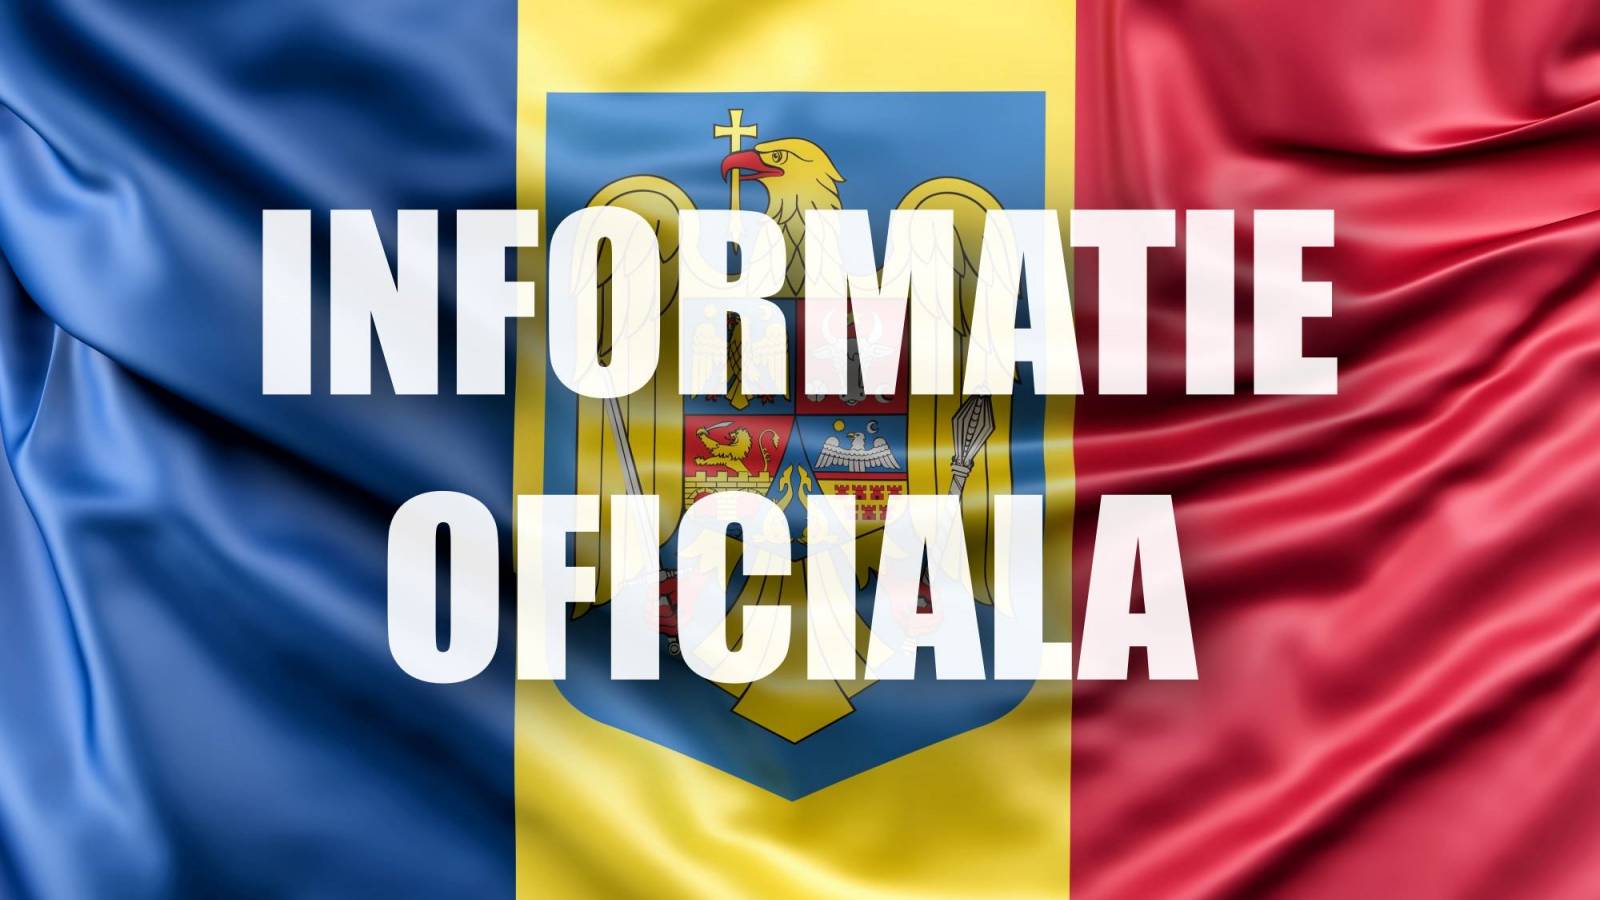 Ministerstwo Obrony Niezwykle ważna PREMIERA Oficjalna Wszyscy Rumuni